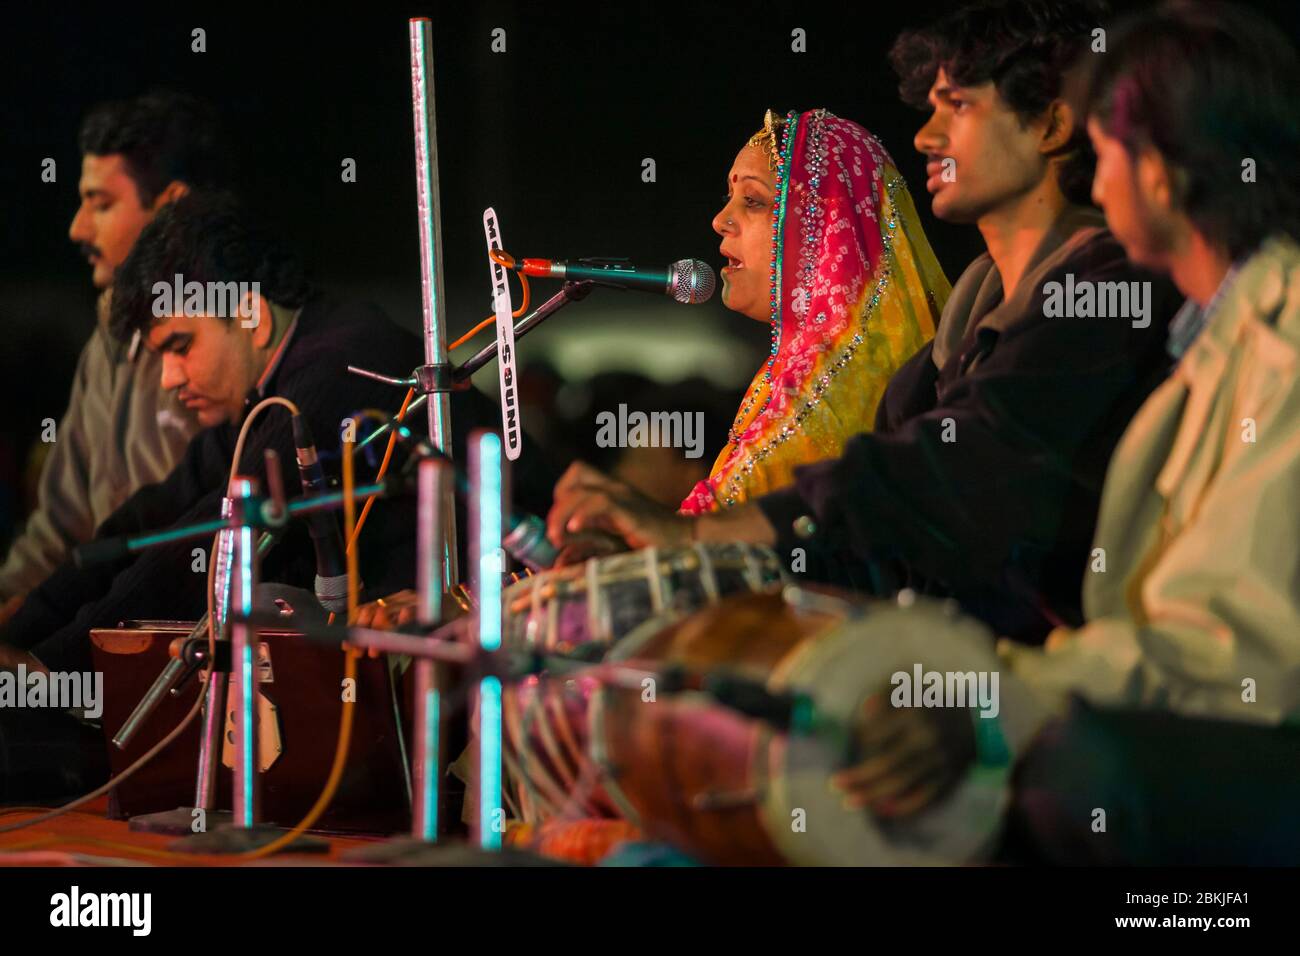 Indien, Rajasthan, Bikaner, Kamel Festival, Sängerin trägt einen Sari, sitzt neben ihren Musikern Stockfoto